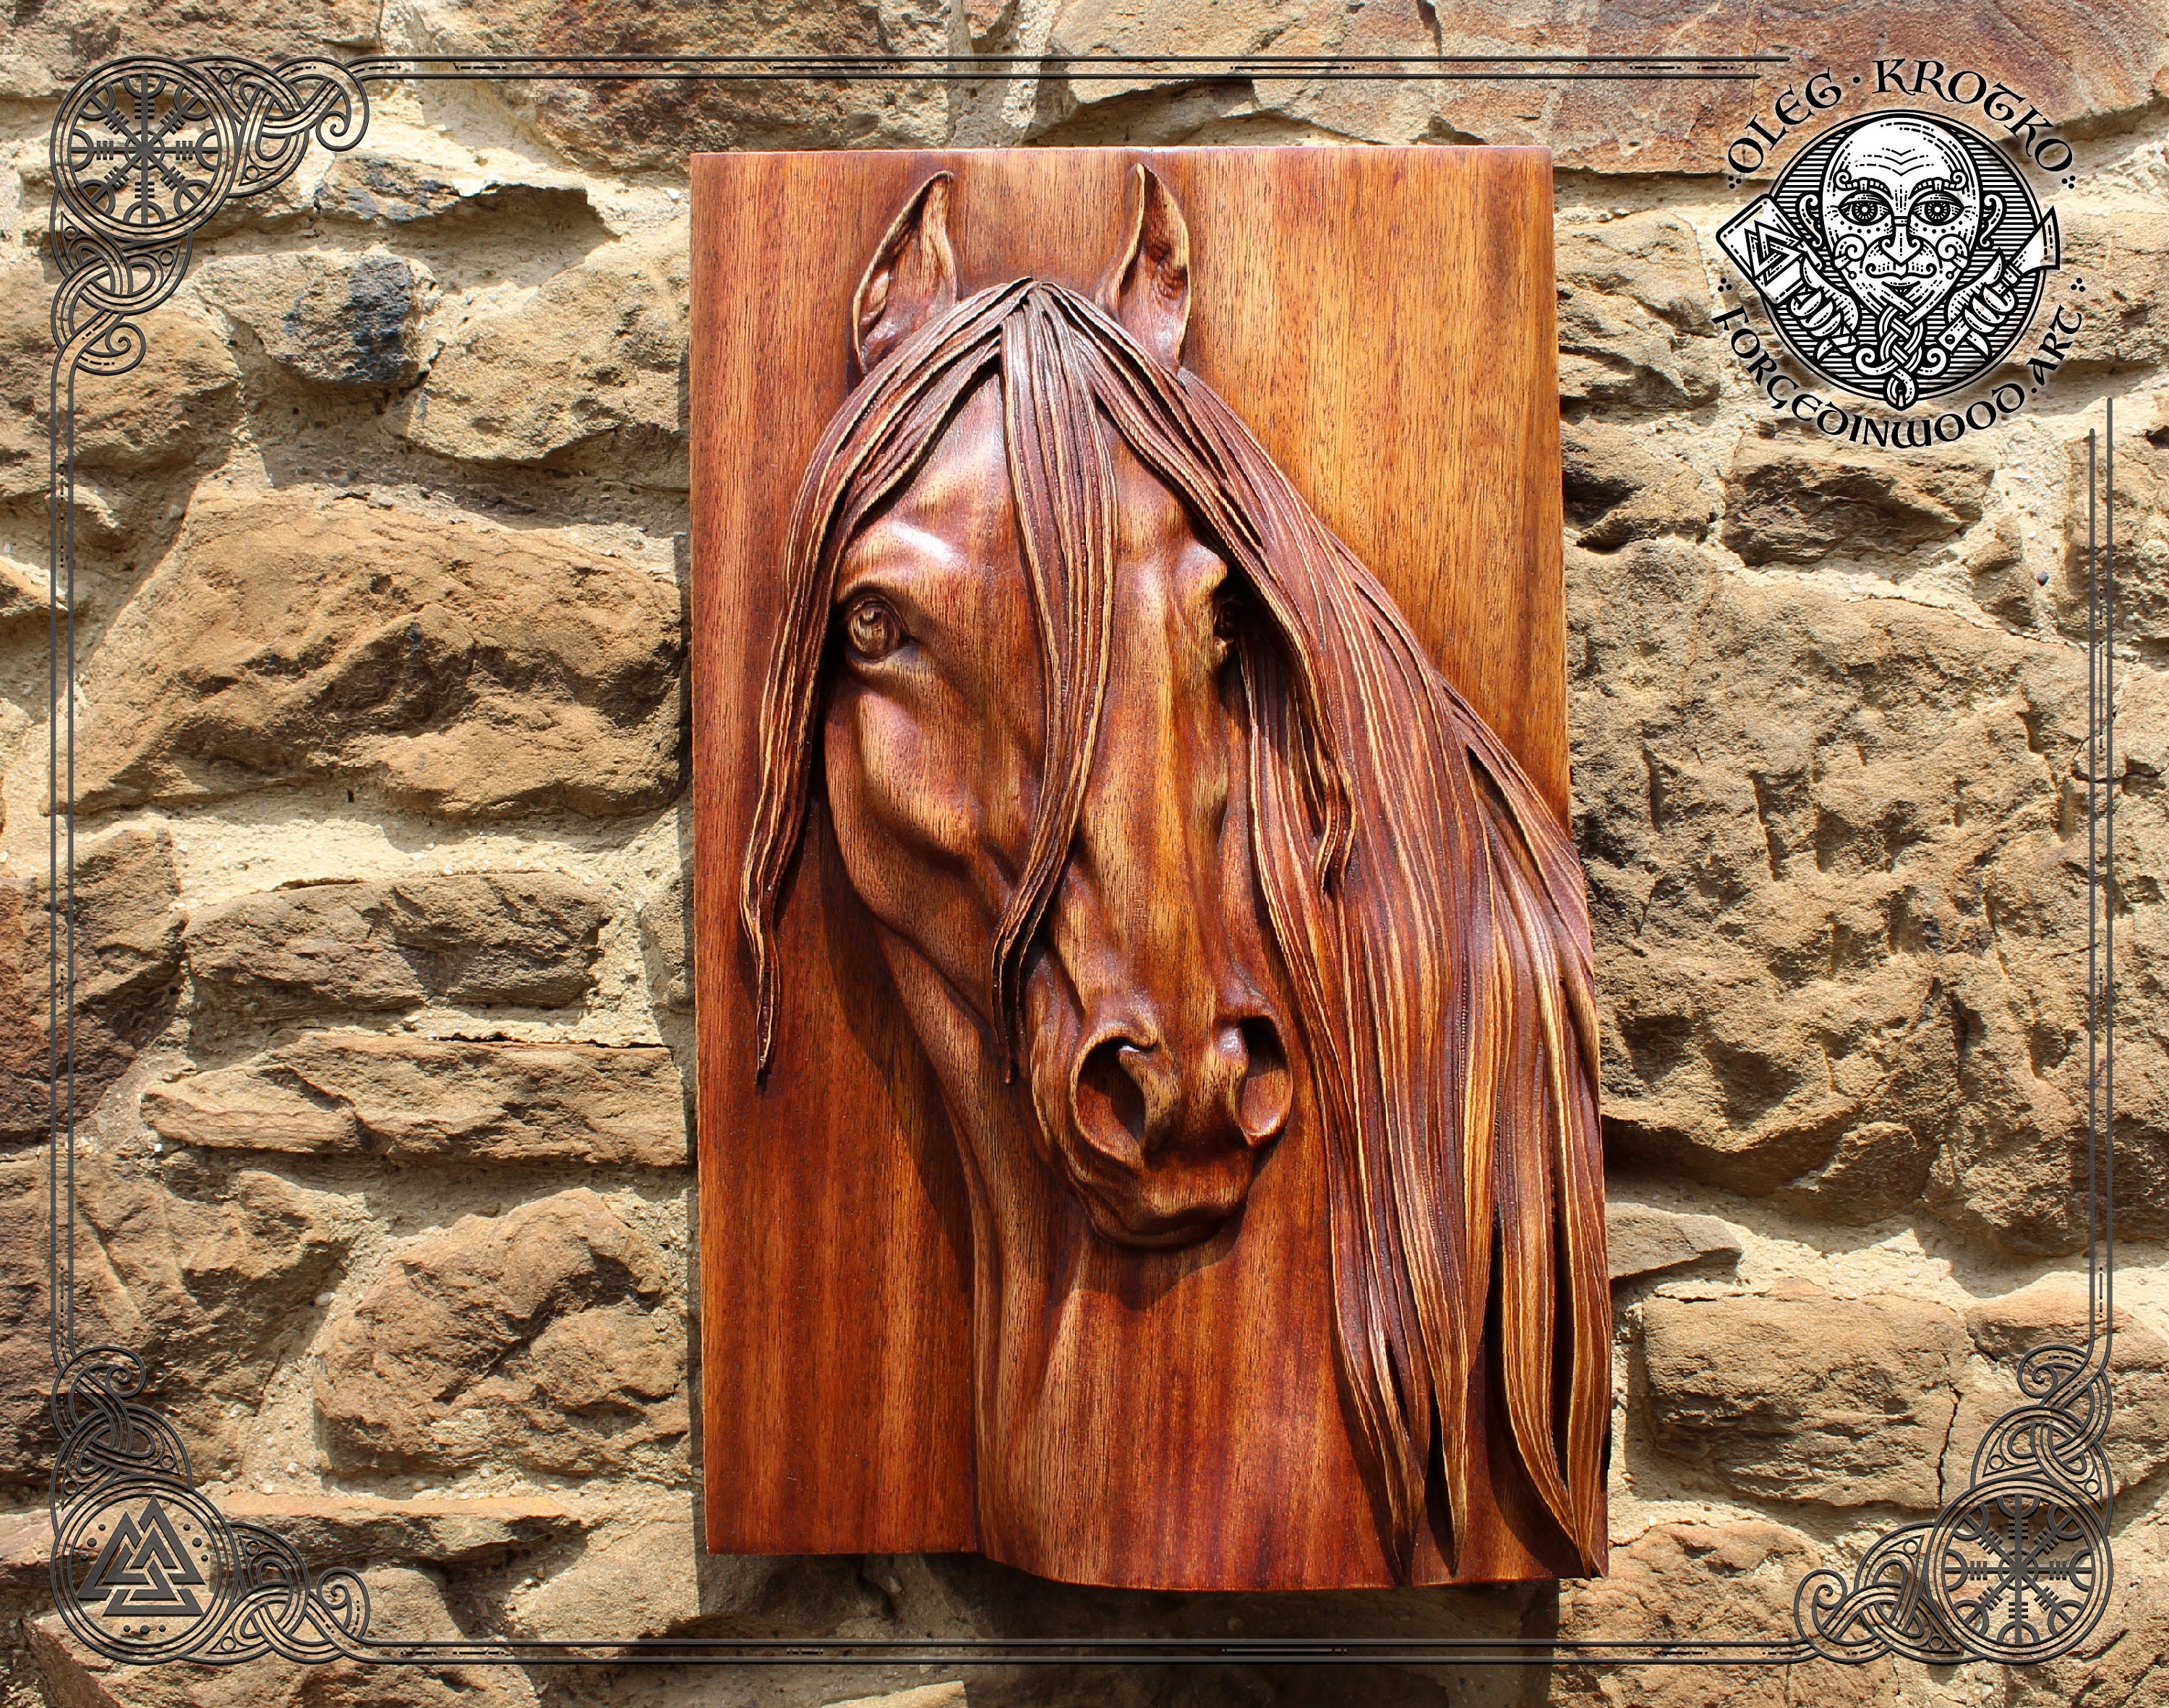 Contraventana de madera - Diseño de caballo